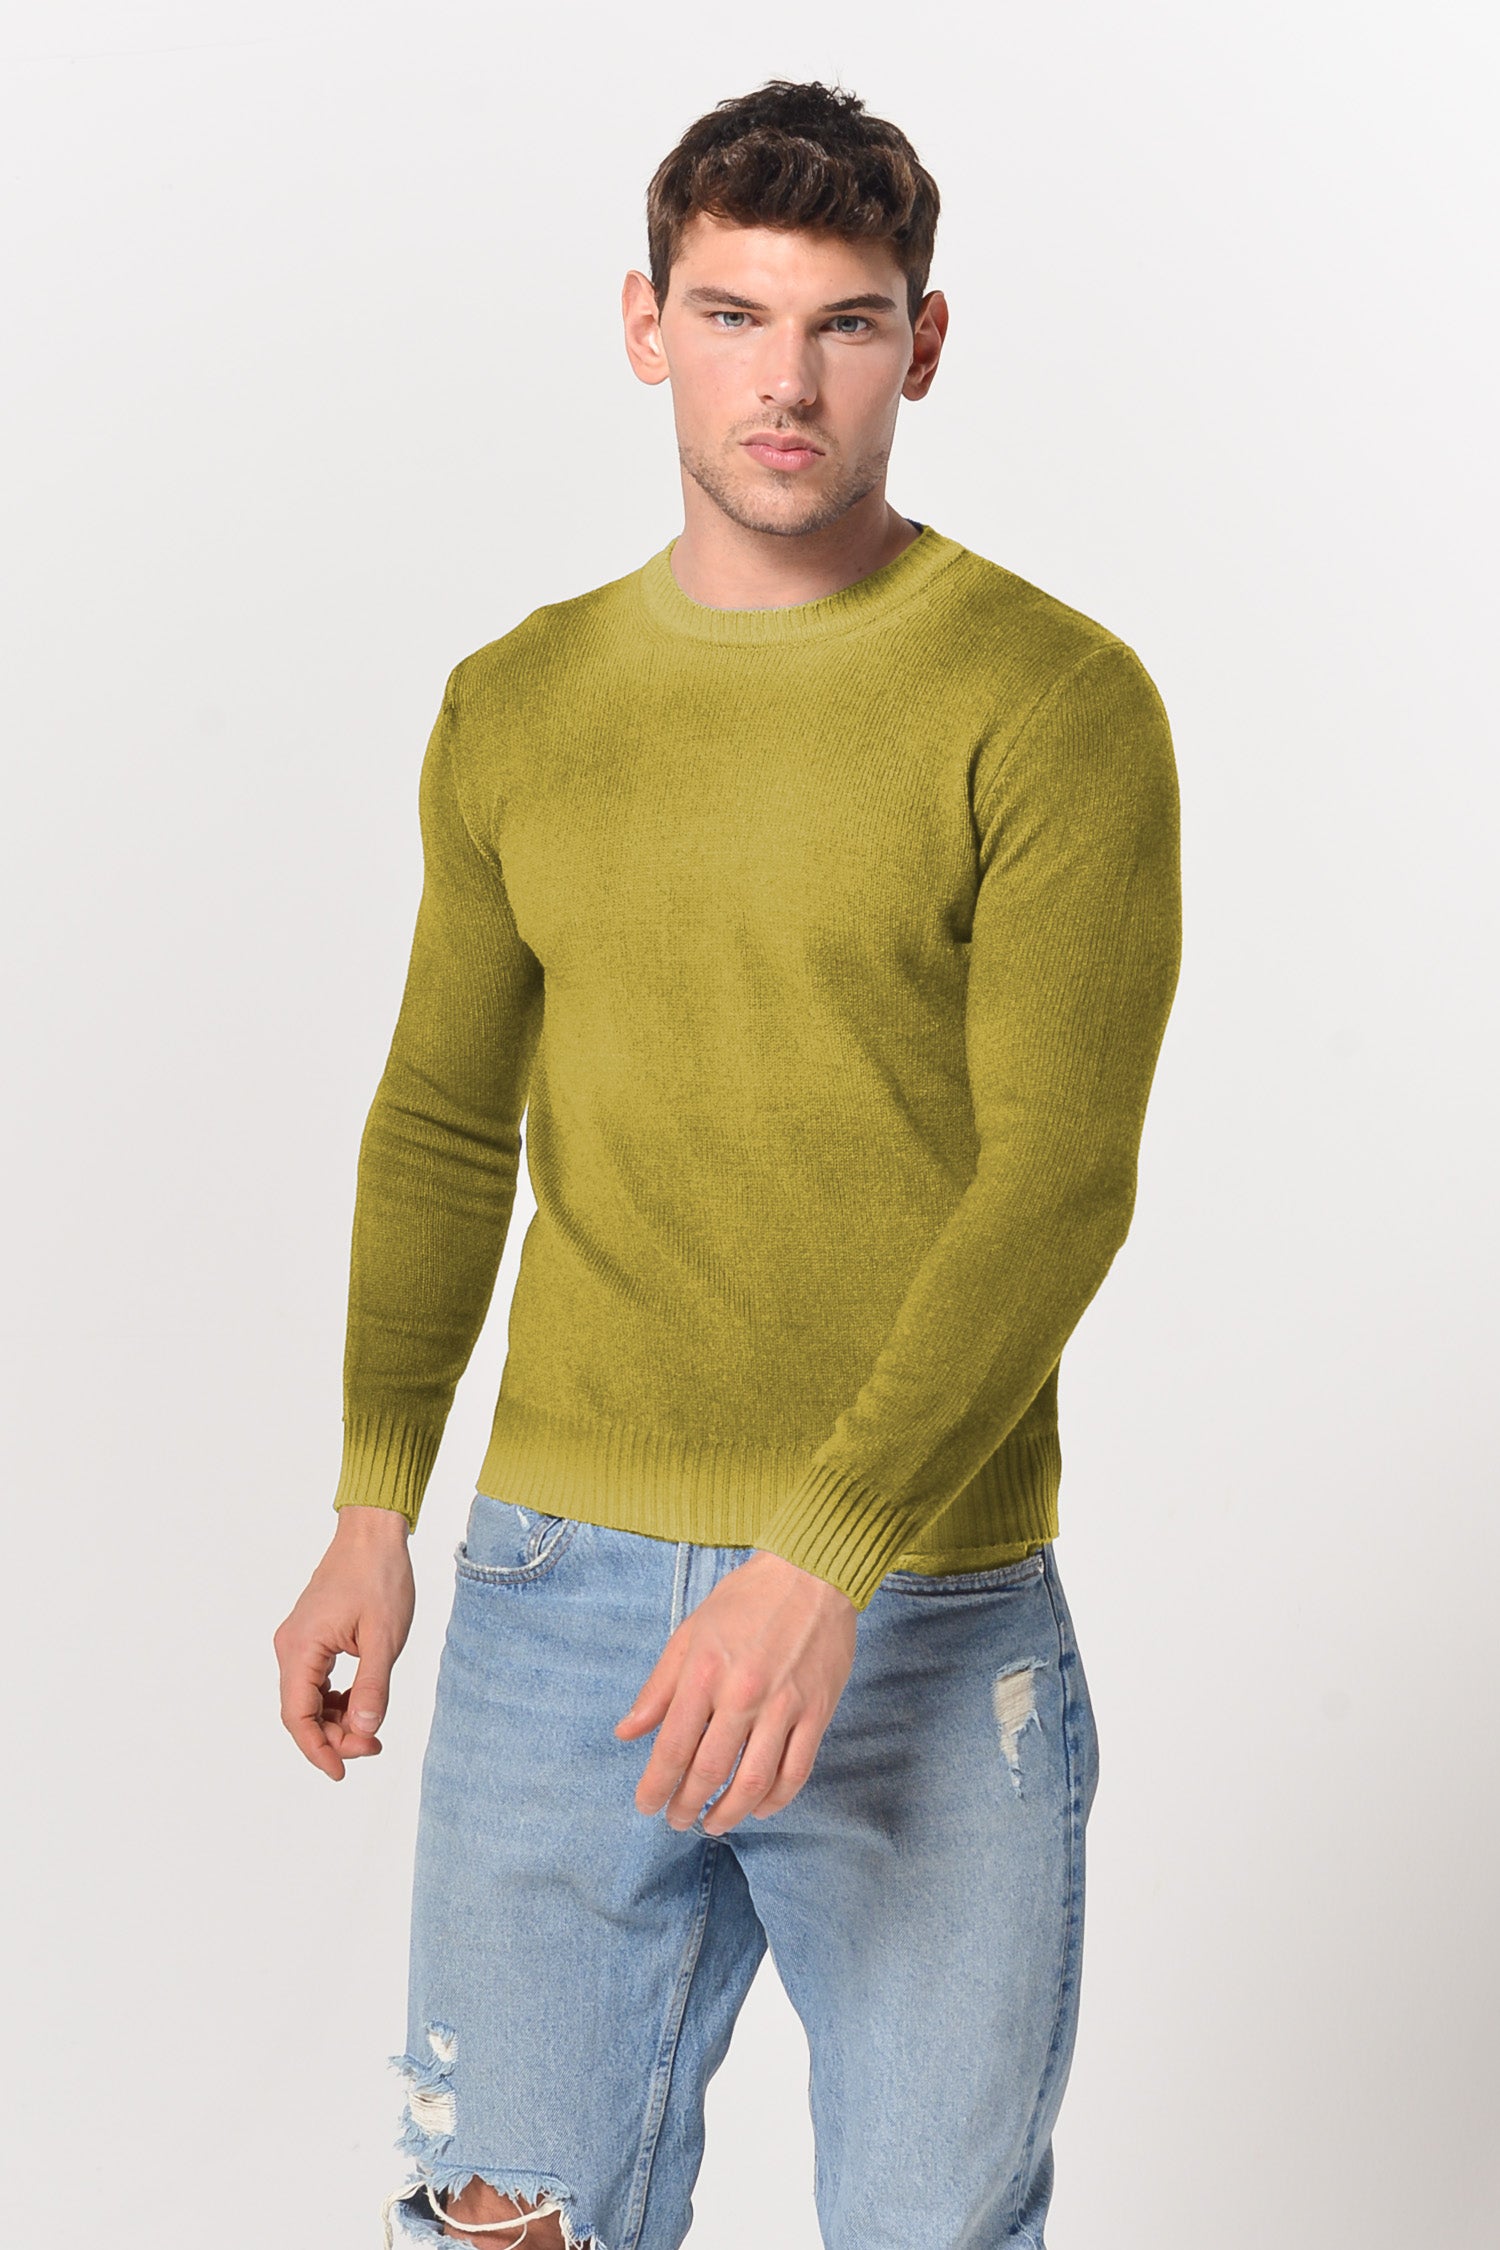 Holden Smoke Art Sweater - Lemon